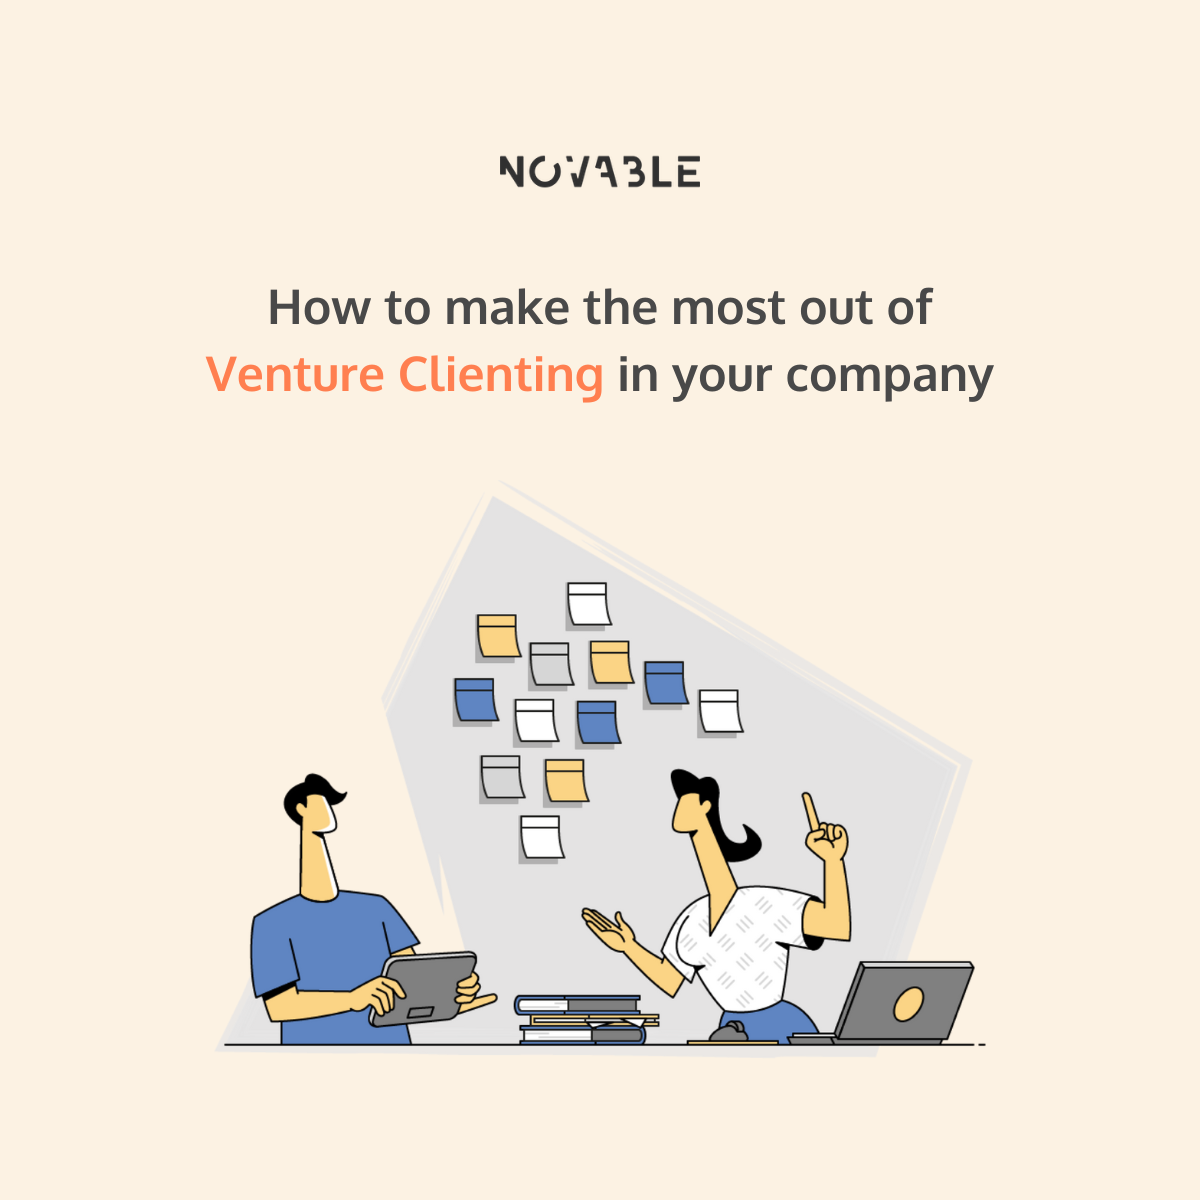 Venture Clienting